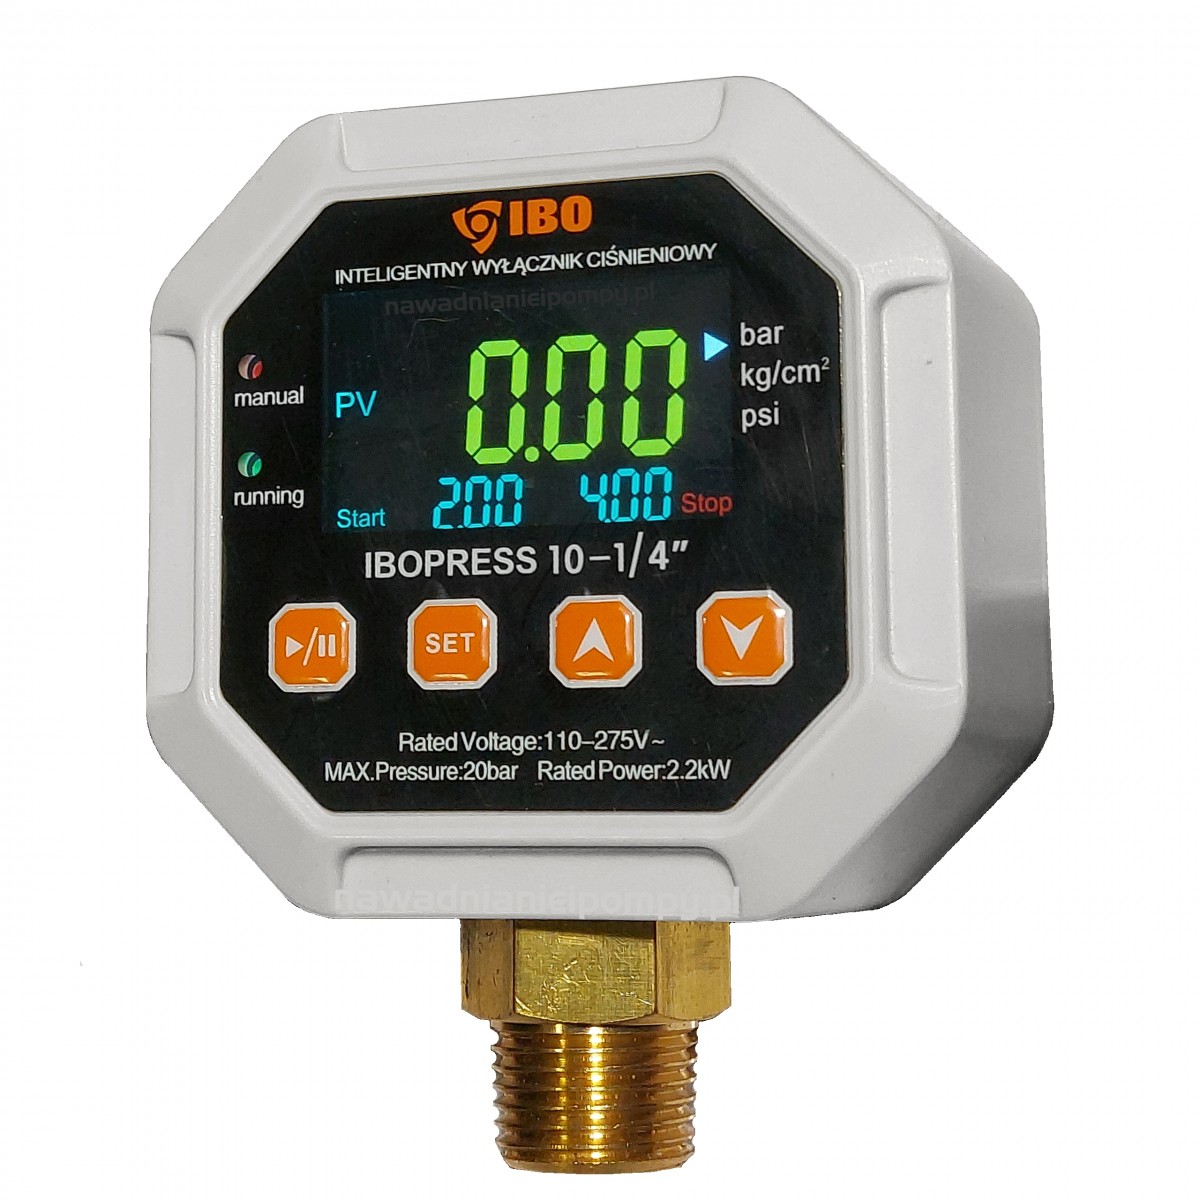 IBOPRESS 10 1/2" elektroniczny wyłącznik ciśnieniowy + suchobieg 230V IBO